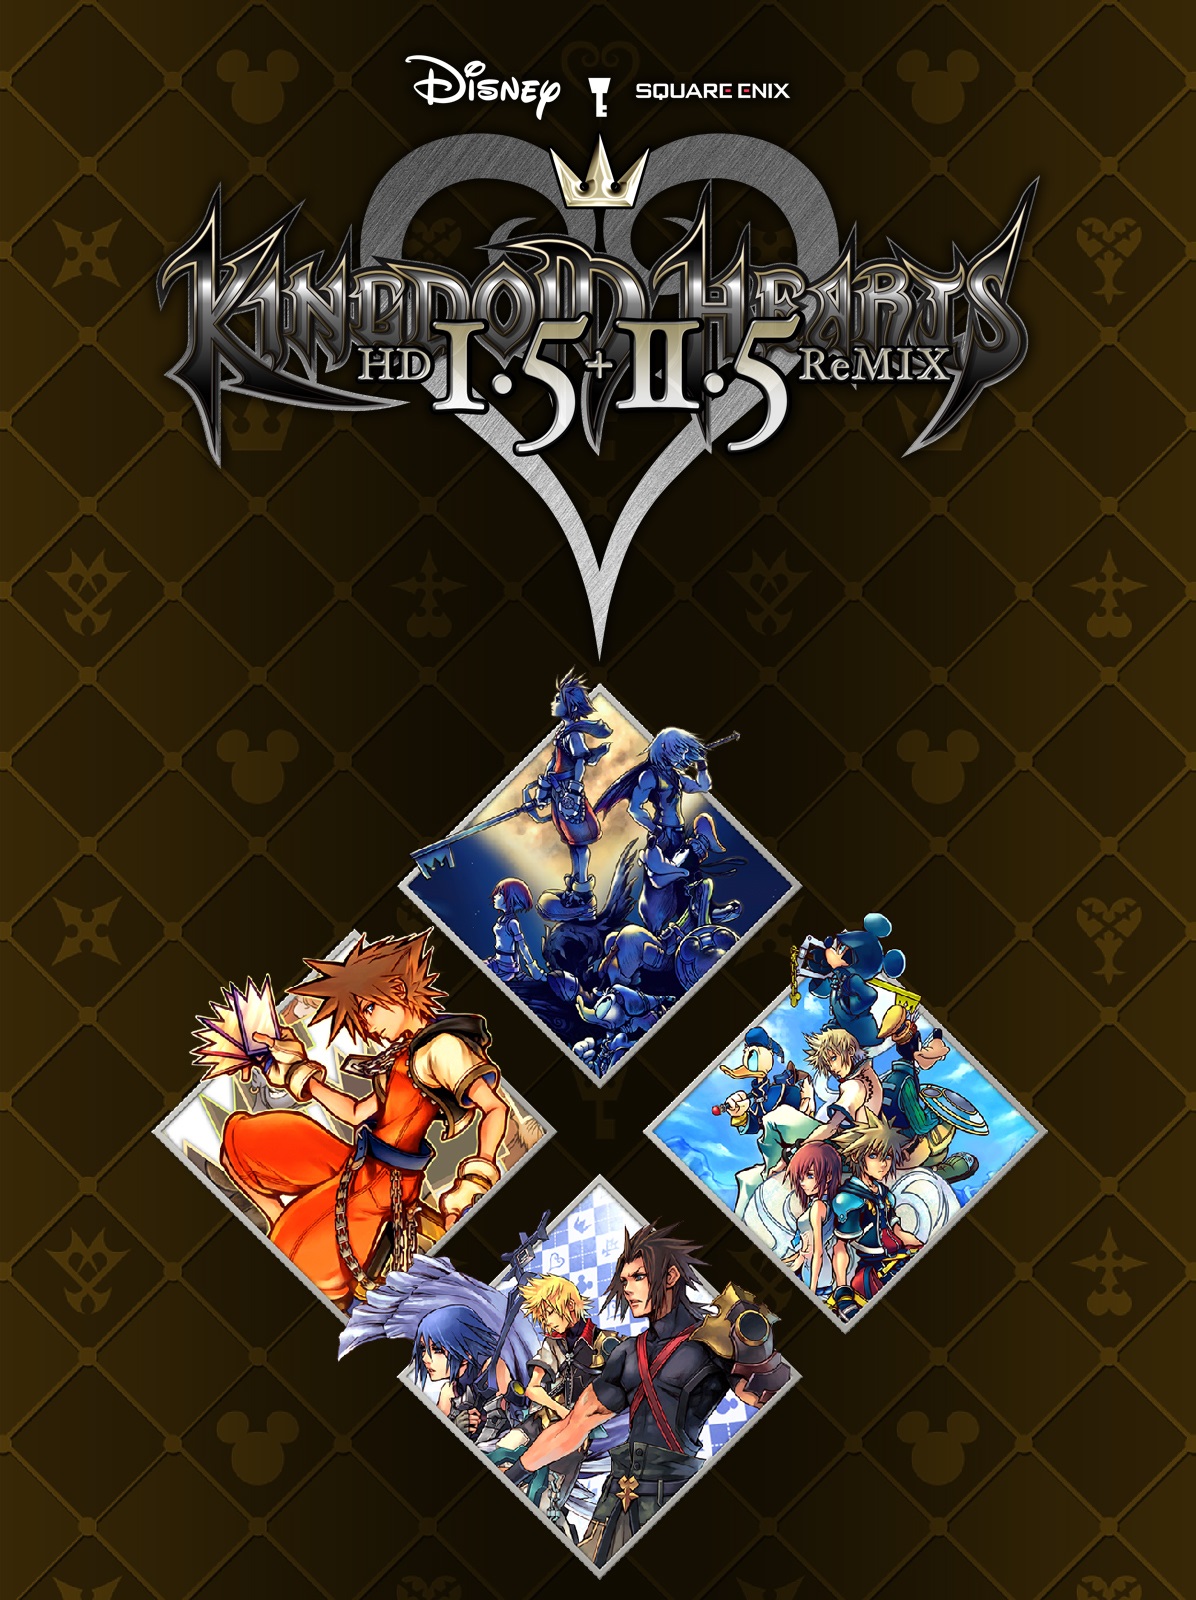 Retrouvez notre TEST : Kingdom Hearts HD 1.5 + 2.5 ReMIX STEAM 